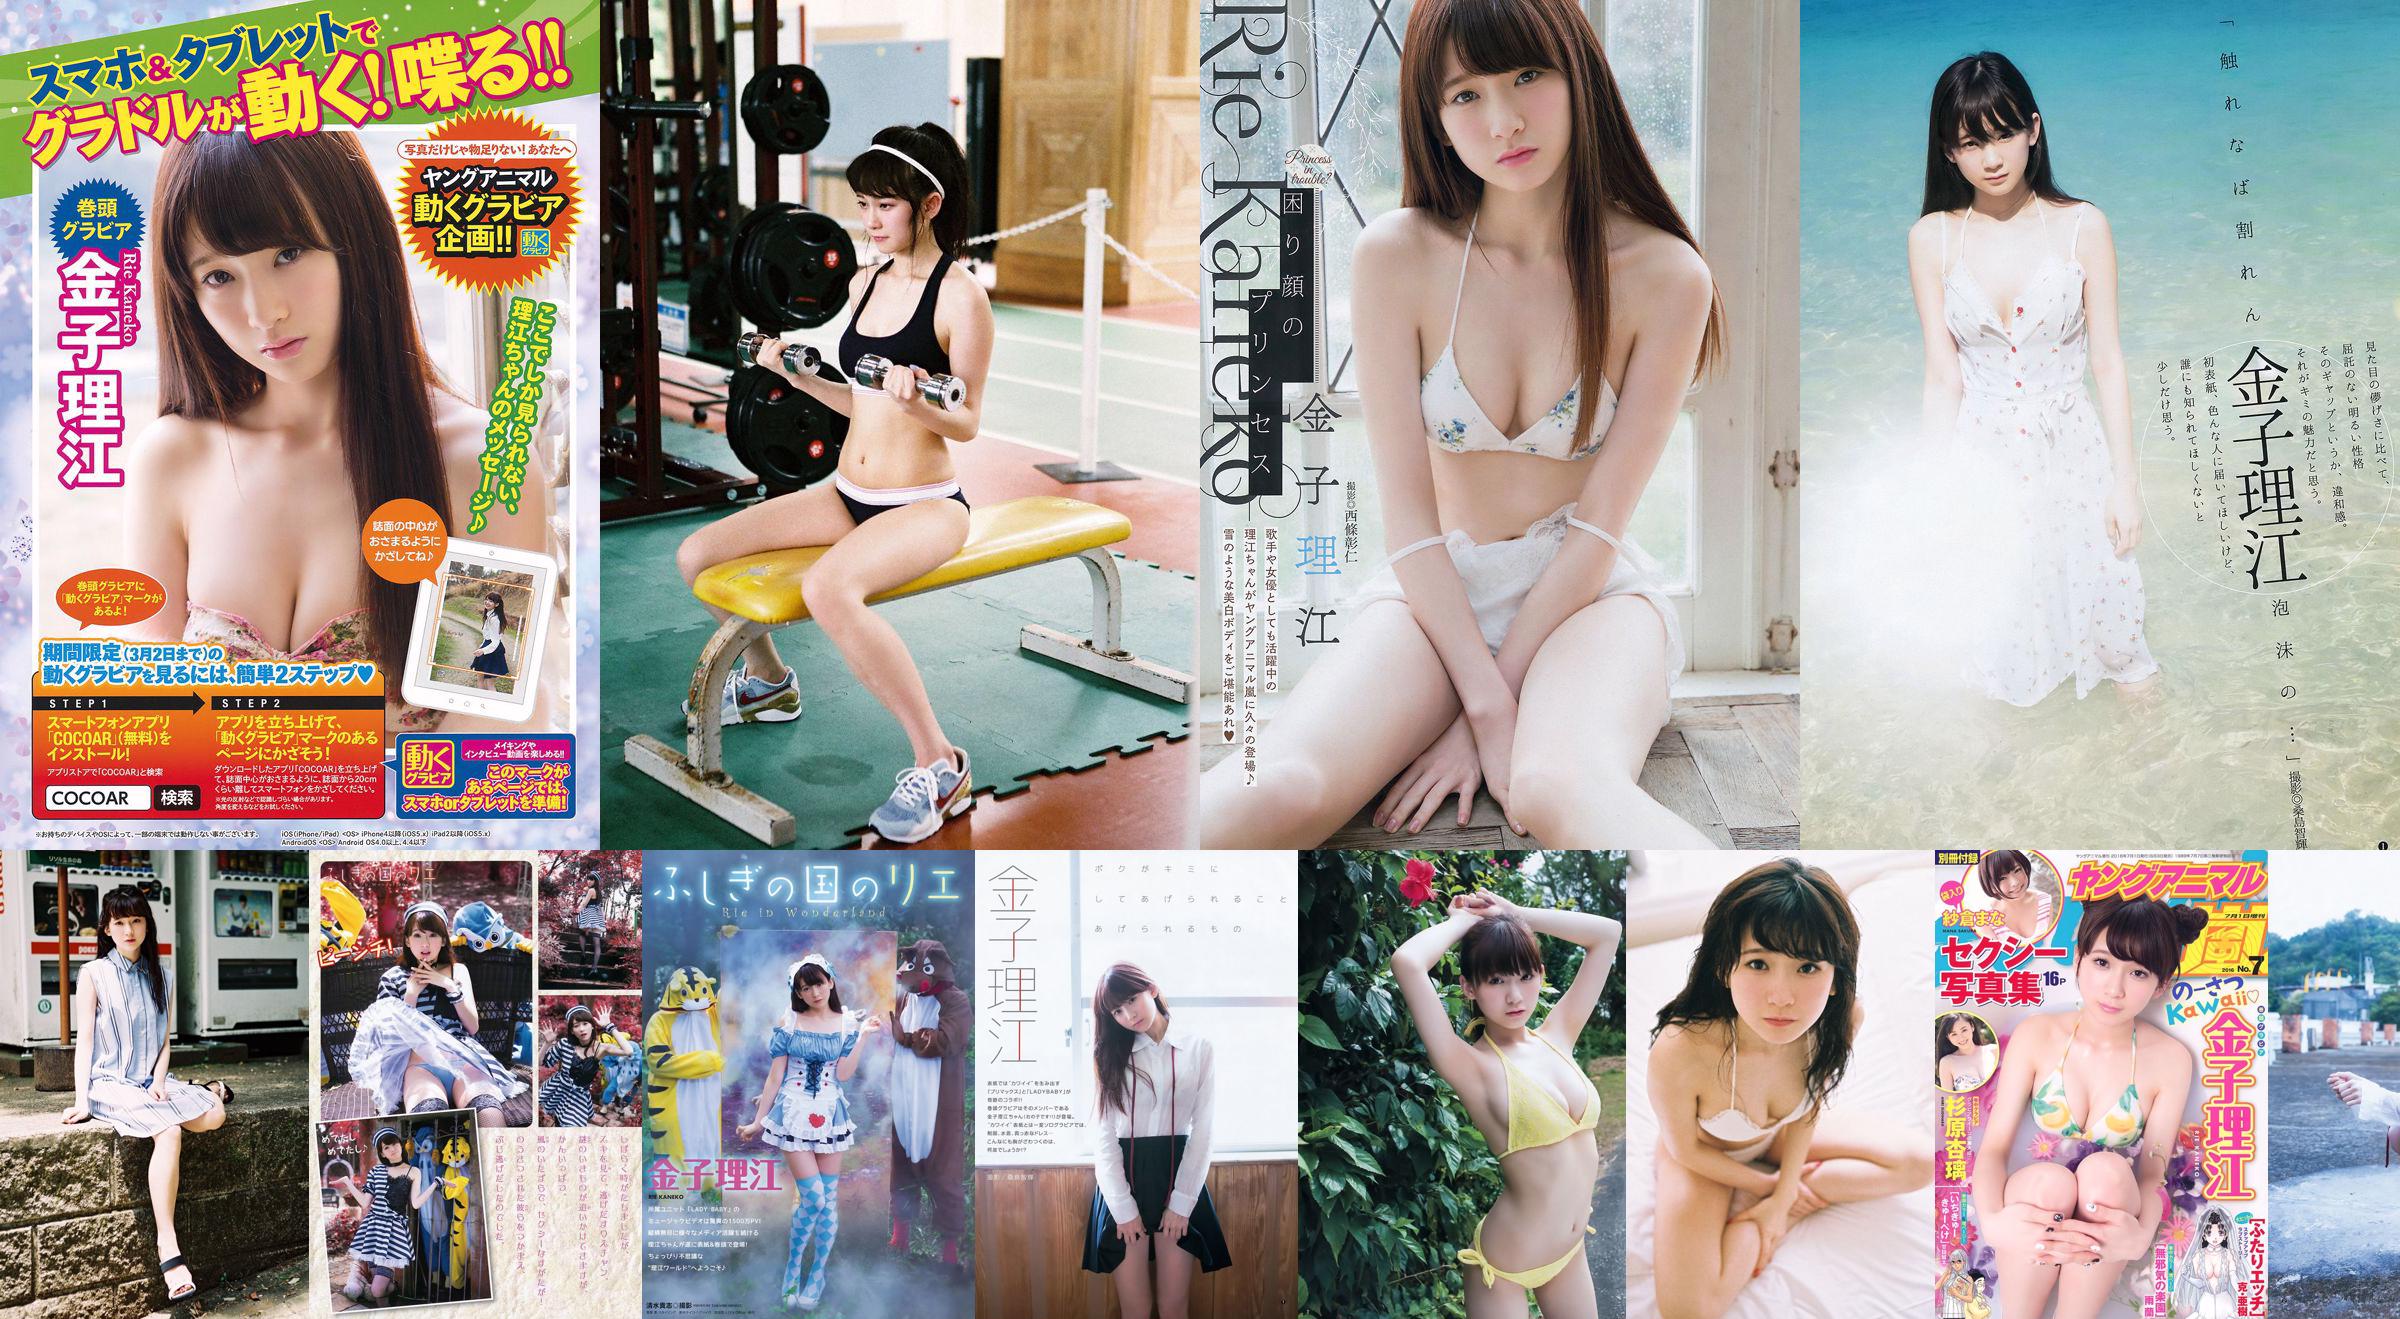 Rie Kaneko, Anri Sugihara, Sakura ま な [Edición especial de animales jóvenes Arashi] No 07 2016 Photo Magazine No.a3b1db Página 3